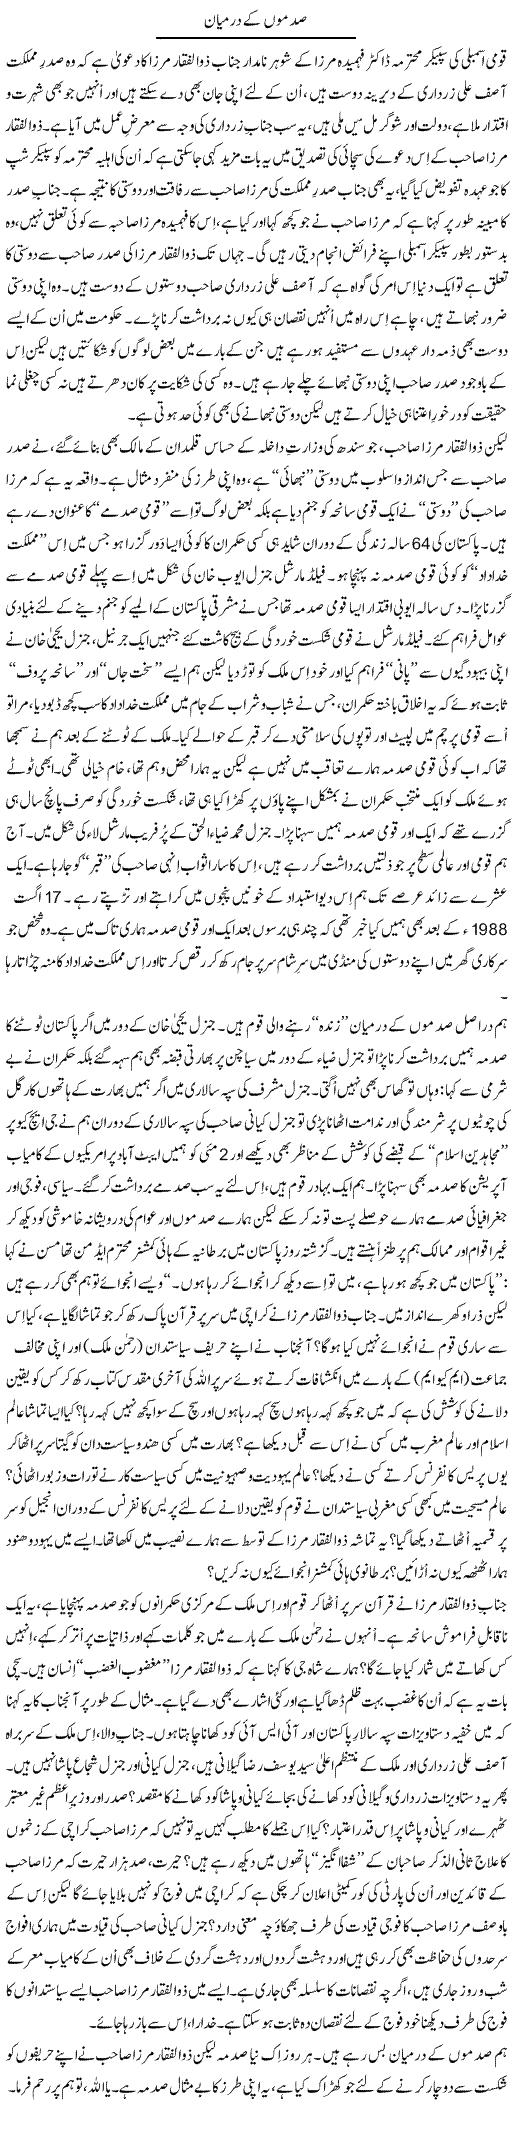 Zulfiqar Mirza Express Column Tanvir Qasir 3 September 2011